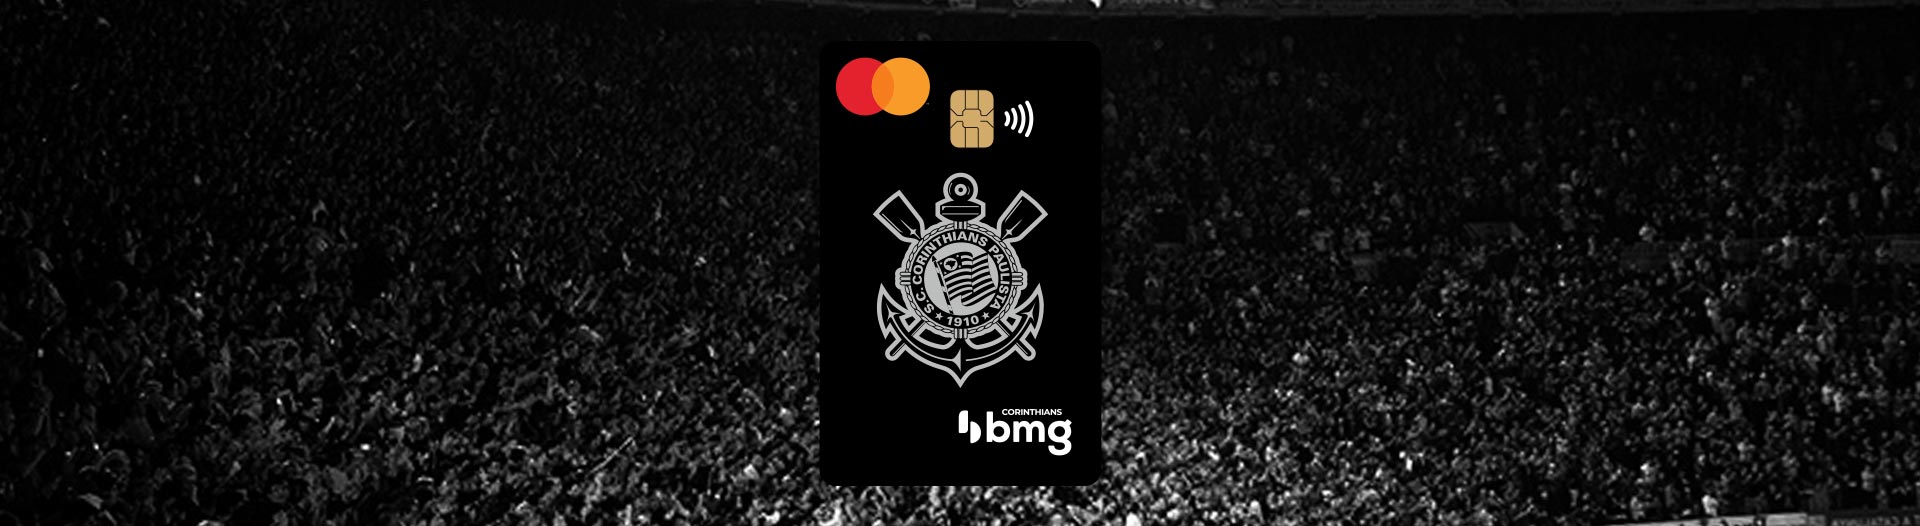 Conheça o cartão de crédito Corinthias BMG Imagem: Banco bmg